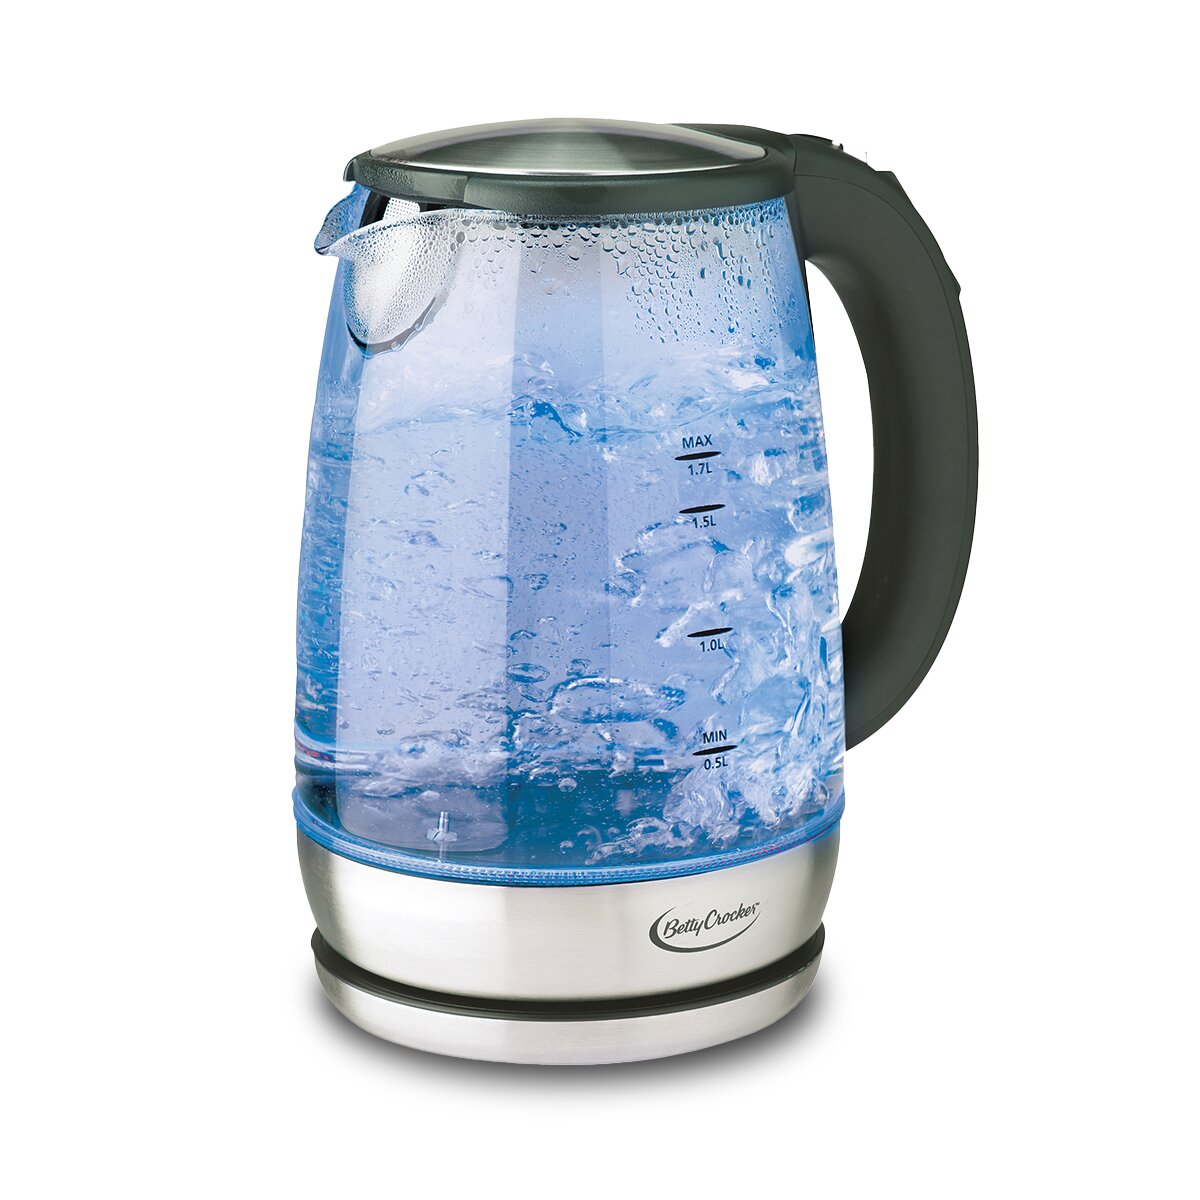 https://assets.wfcdn.com/im/23768212/compr-r85/1700/170044002/betty-crocker-18-quarts-glass-electric-tea-kettle.jpg